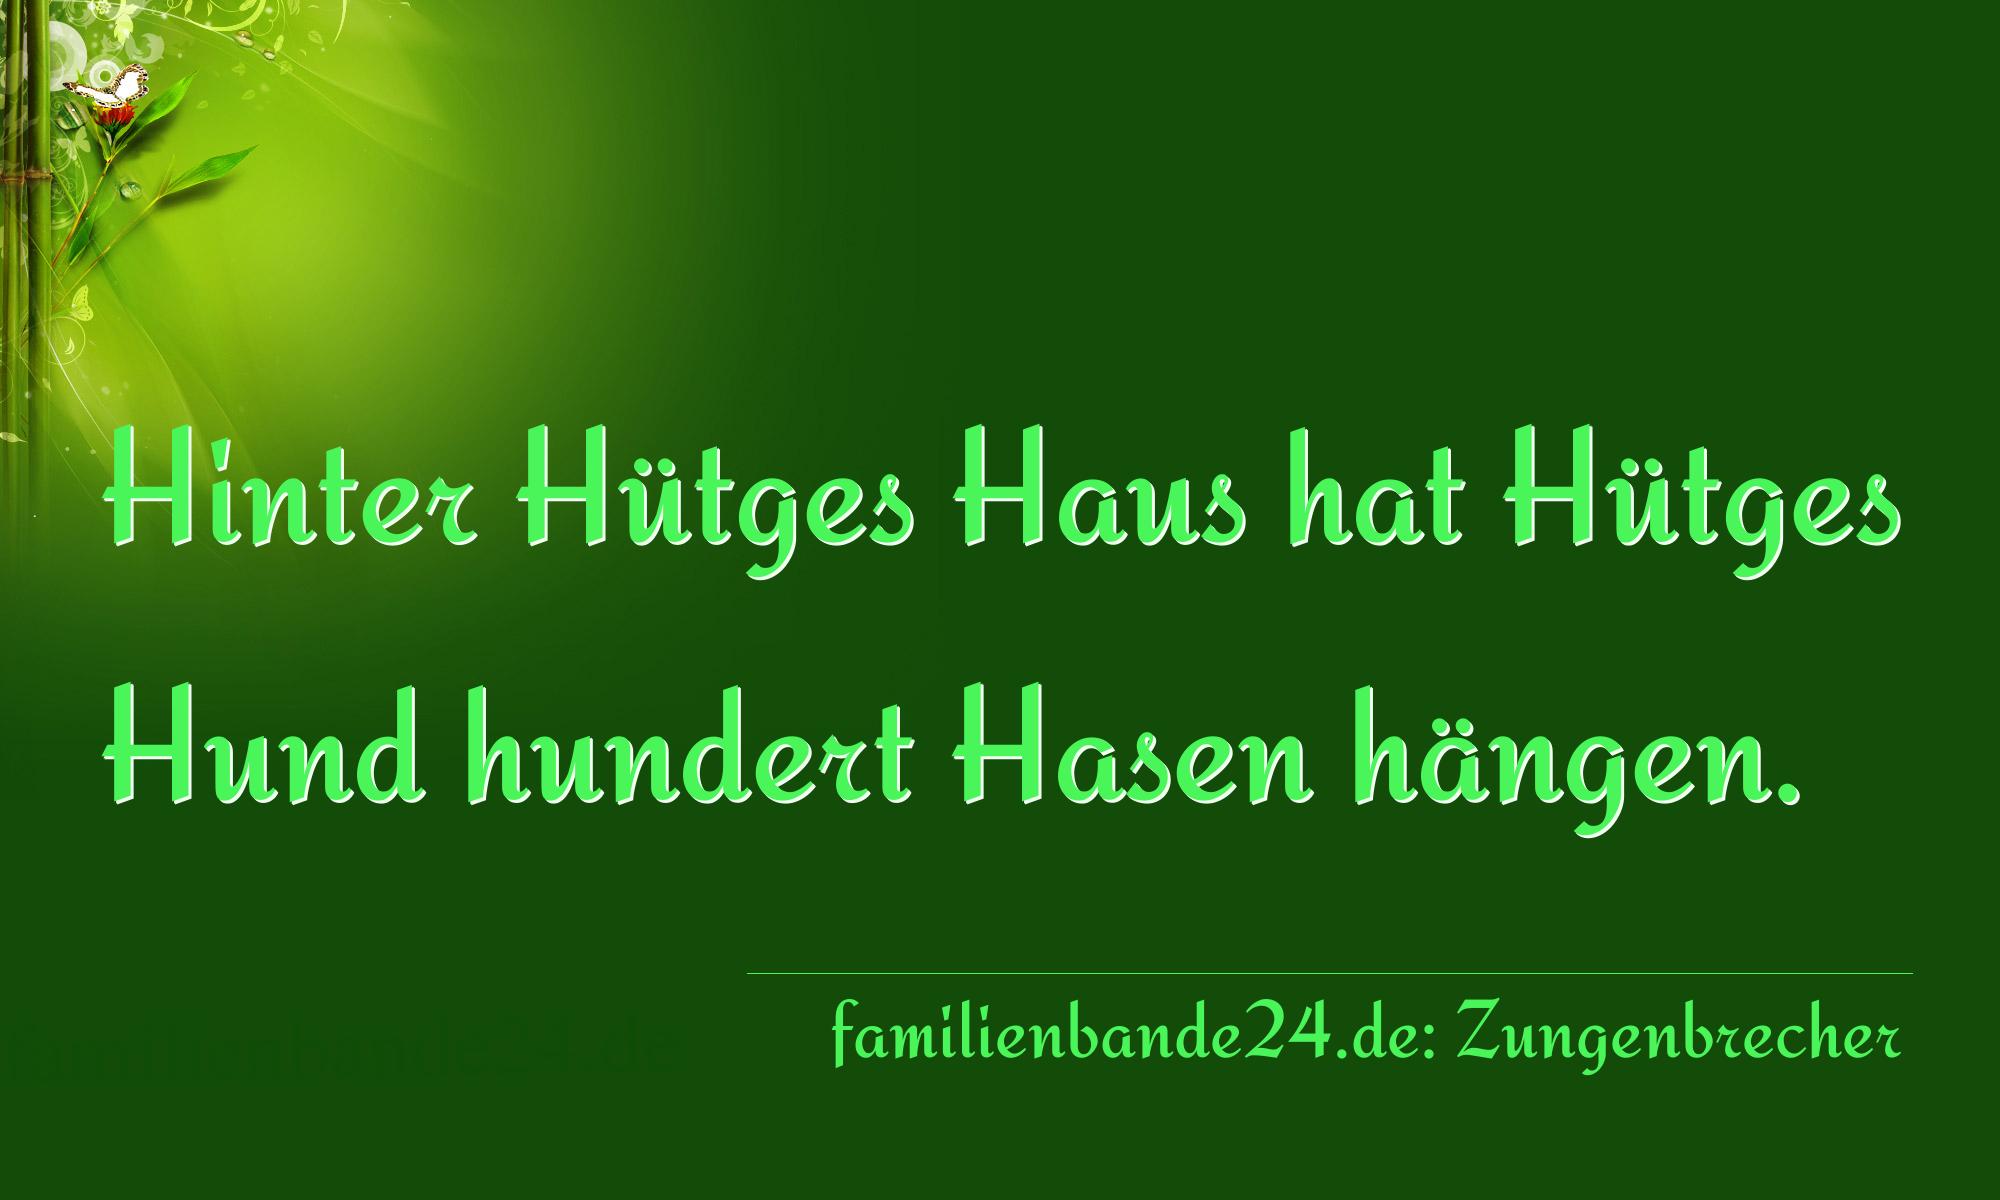 Zungenbrecher Nummer 1680: Hinter Hütges Haus hat Hütges Hund hundert Hasen hängen [...]